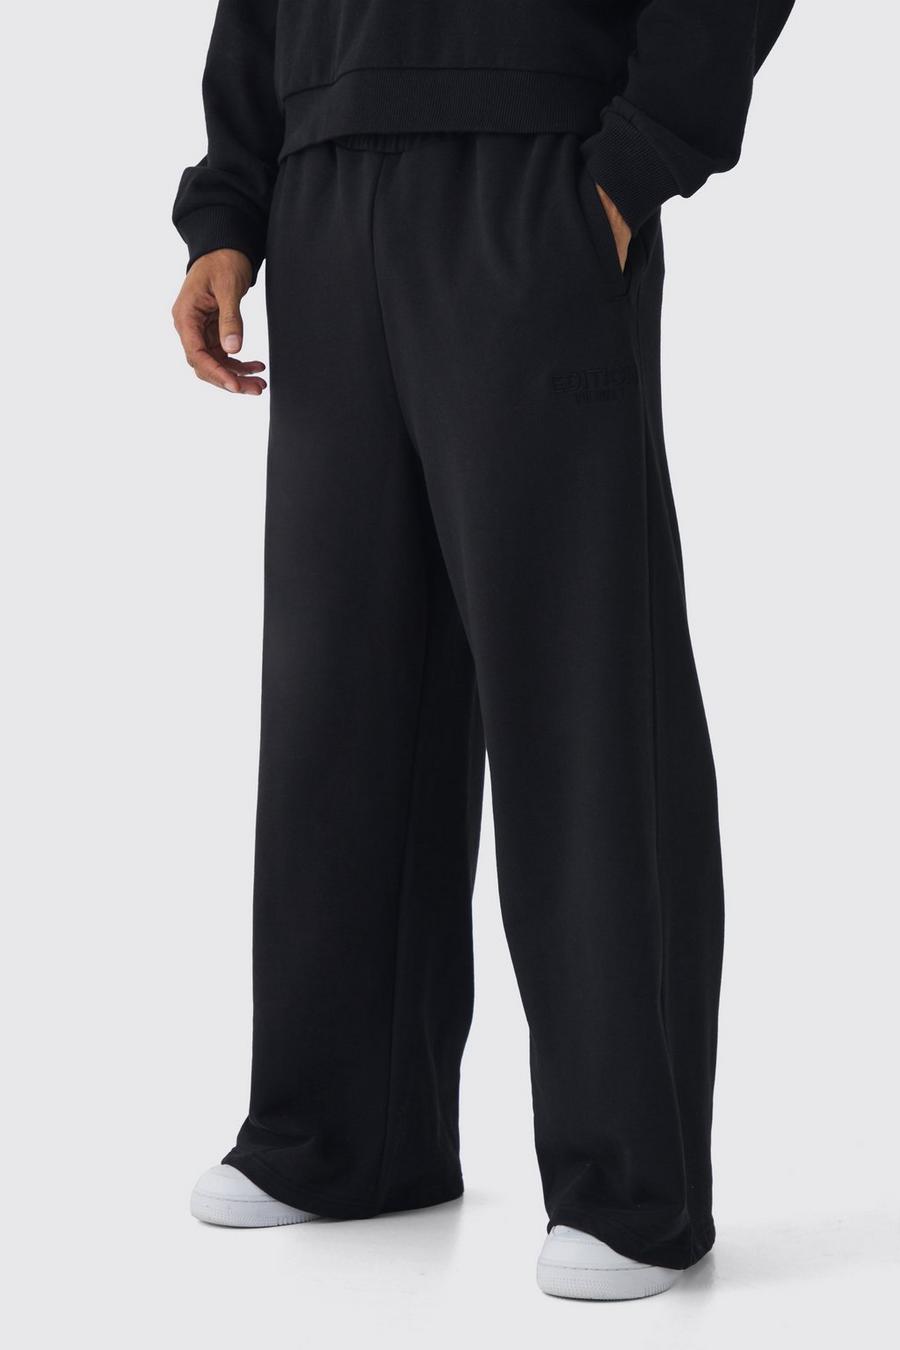 Pantalón deportivo grueso de pernera súper ancha de EDITION, Black